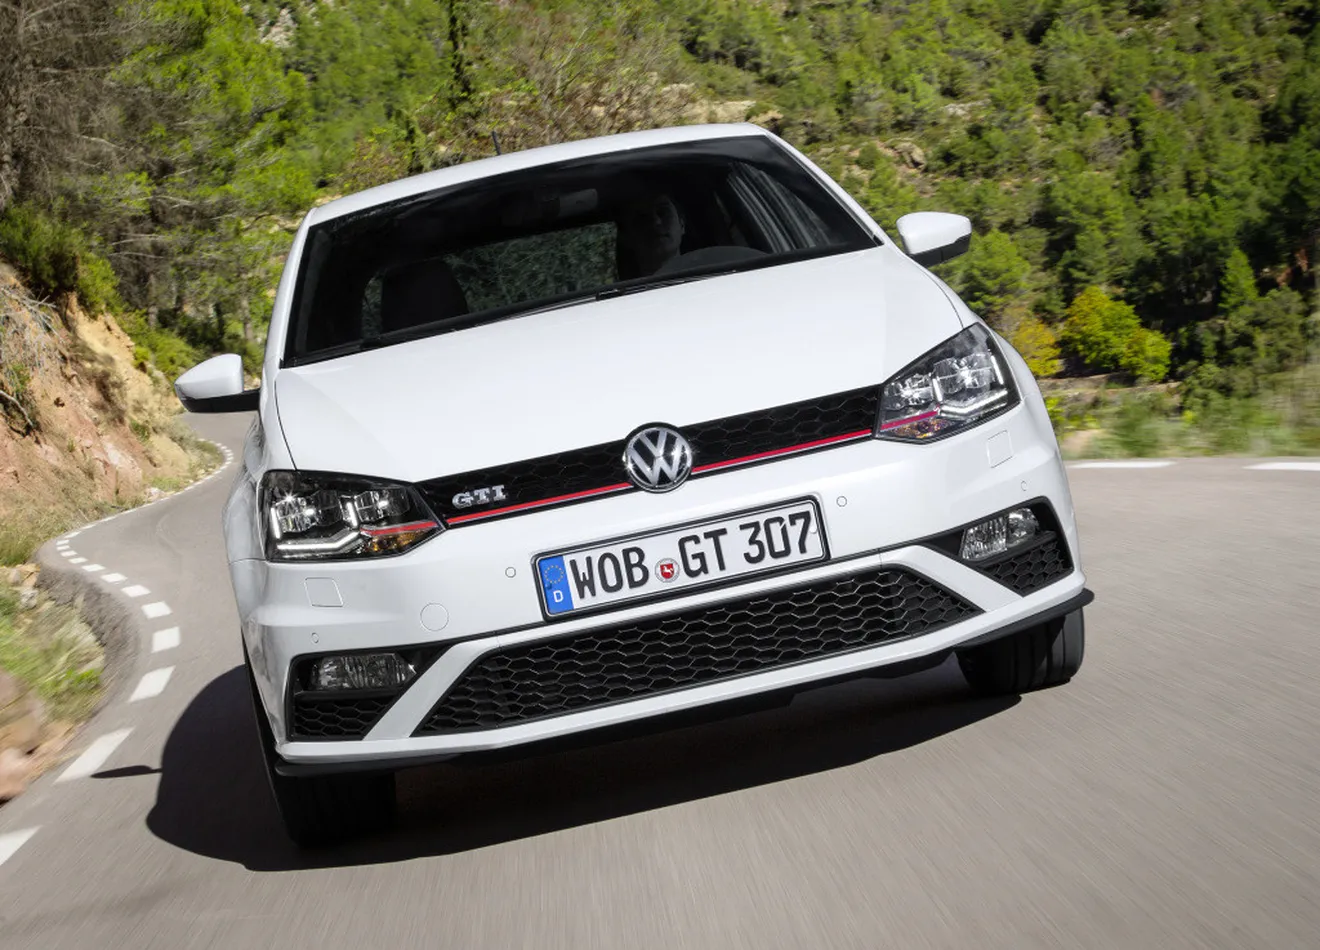 Volkswagen admite algunos errores en la homologación de CO2 y consumos